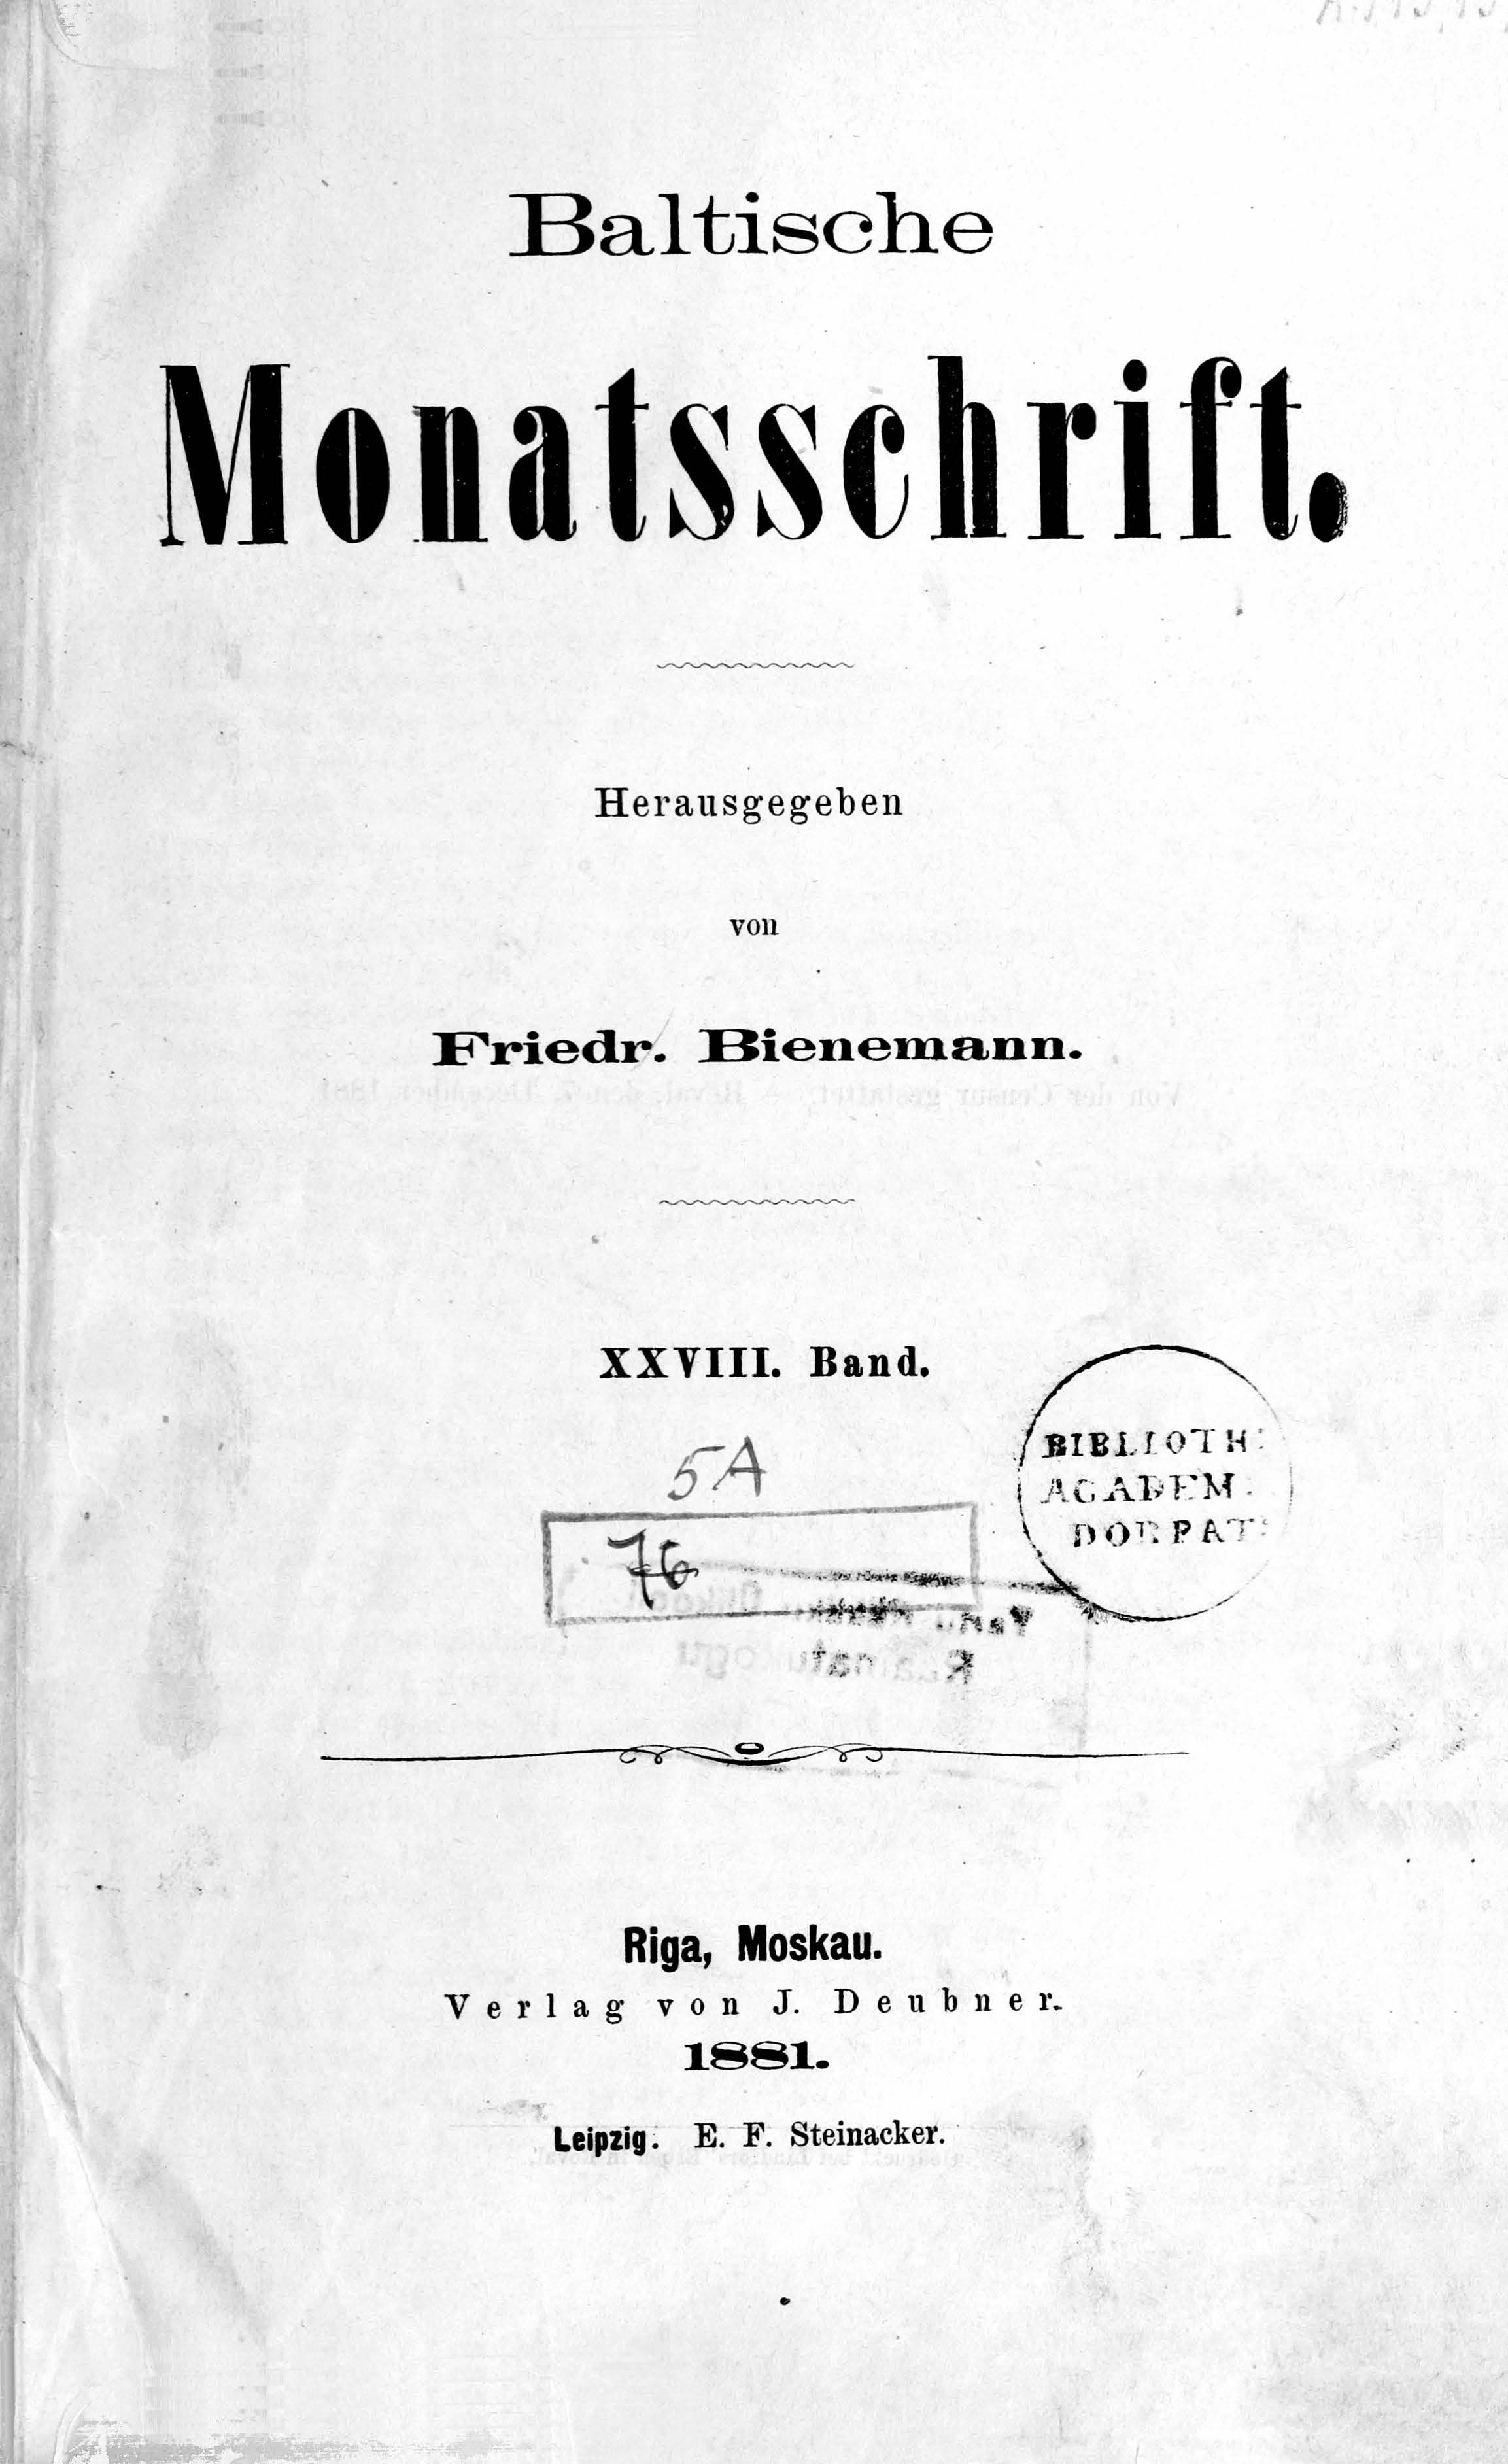 Baltische Monatsschrift [28] (1881) | 1. Титульный лист